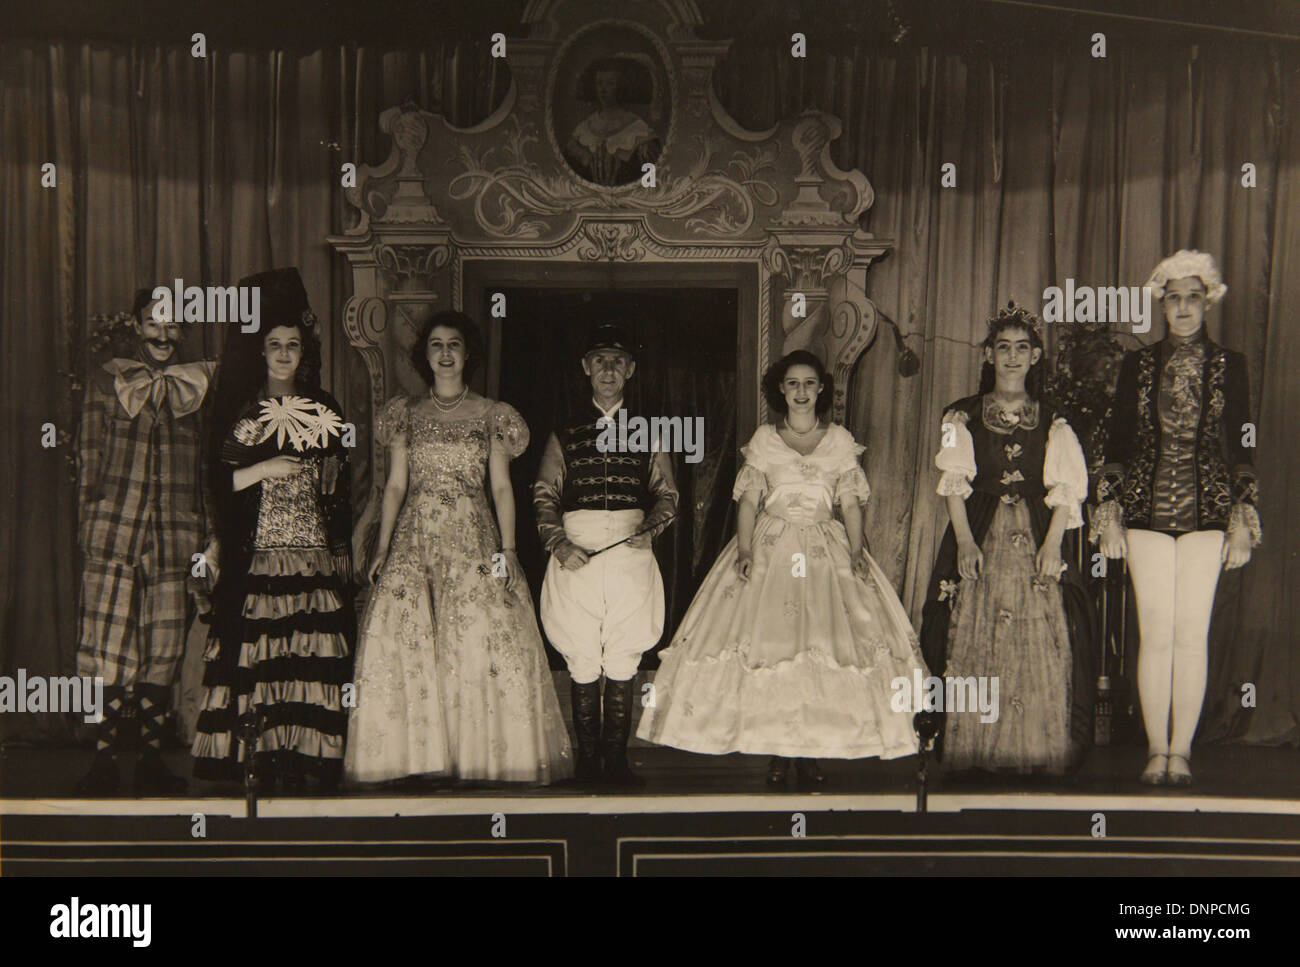 Recueillir des photographie de la princesse Elizabeth (milieu gauche) et de la princesse Margaret (au milieu à droite) en 1944 Banque D'Images